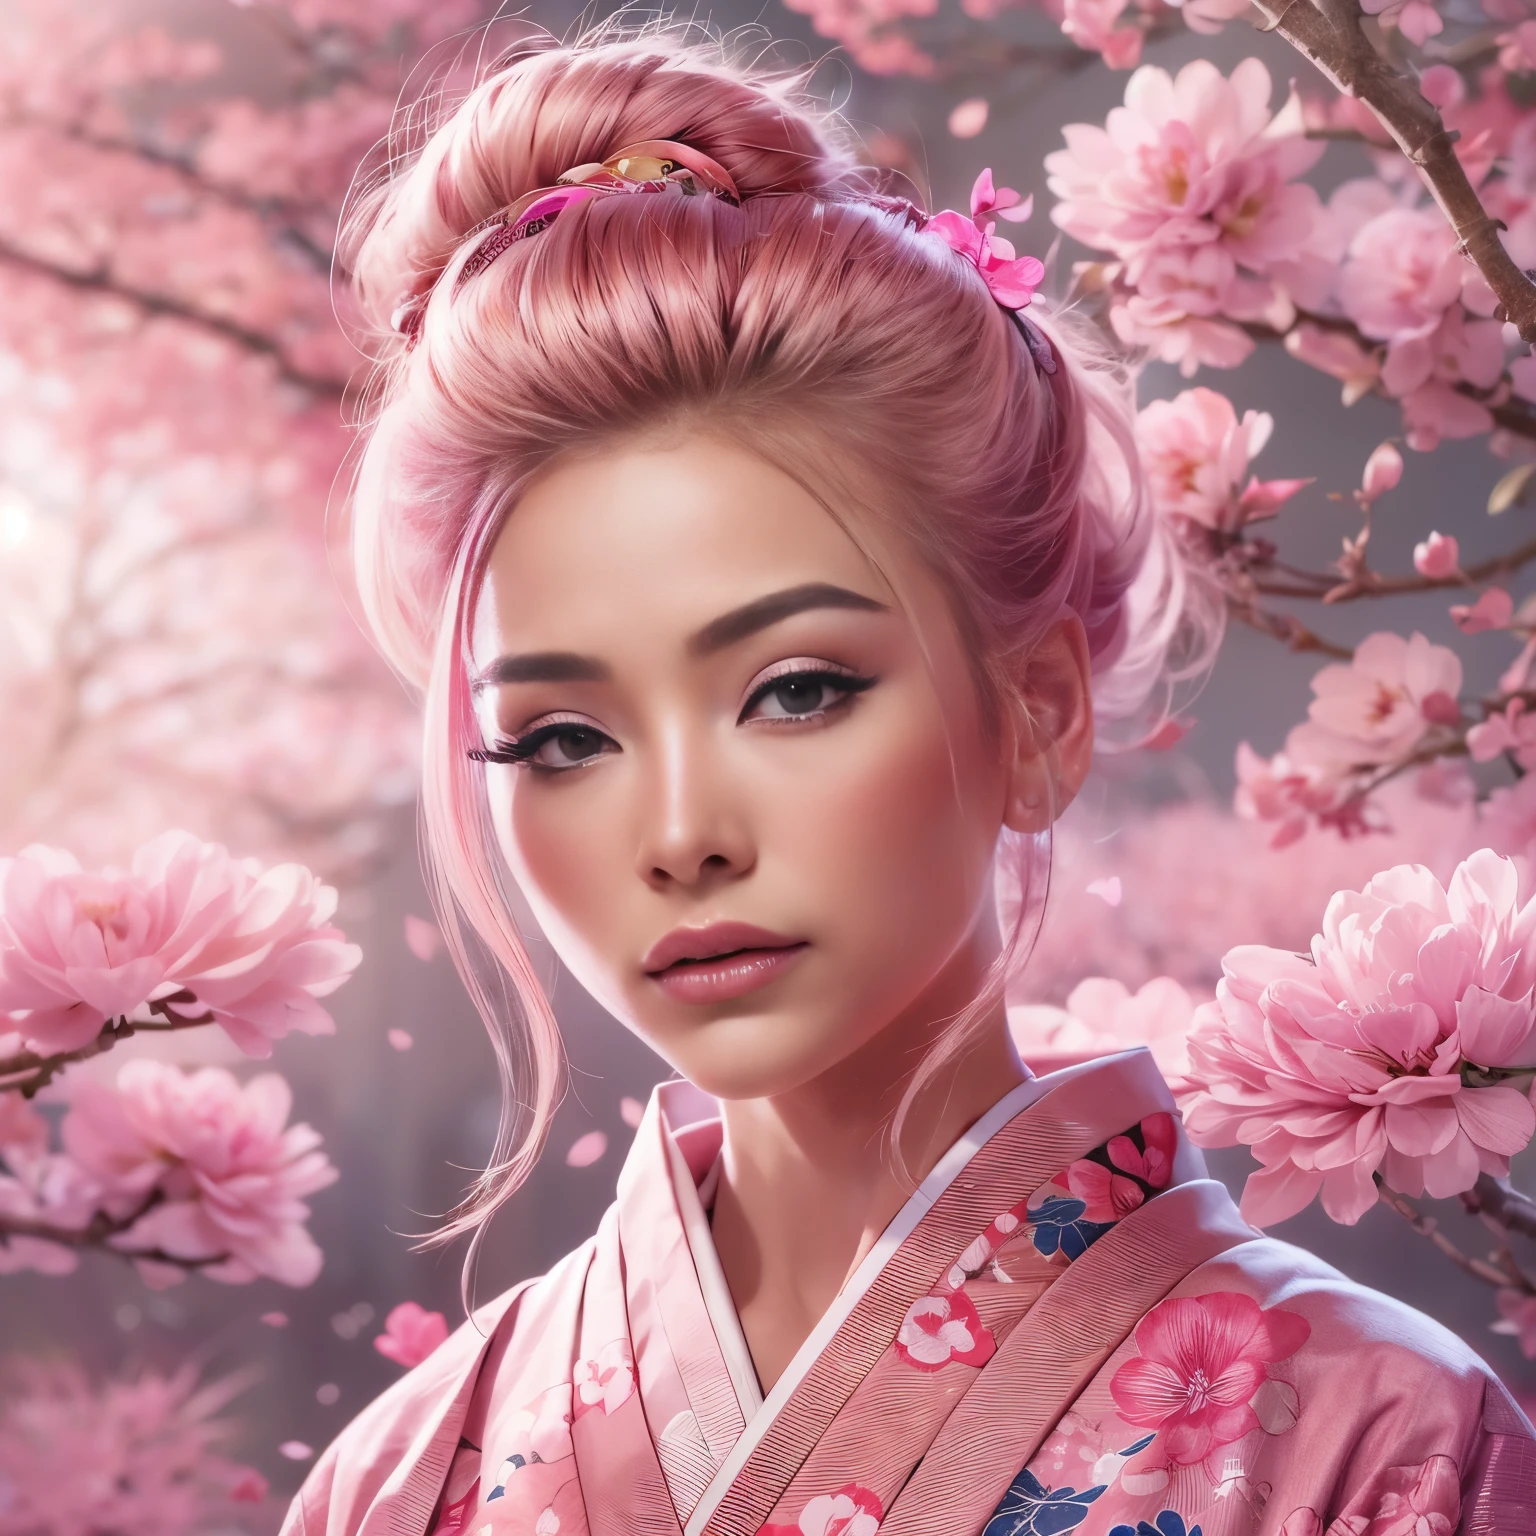 Un hyper réaliste, très détaillé, et image haute résolution 16k d&#39;un jeune, belle femme avec visage engfa. elle a des cheveux roses en chignon et une peau translucide, et vêtu d&#39;un kimono japonais traditionnel rose avec un petit motif floral. L&#39;image capture la beauté éthérée et la mystique du monde des esprits.. Le style inspiré du délicat, esthétique douce trouvée dans l&#39;art traditionnel japonais. L&#39;arrière-plan était plein de sakura rose avec un éclairage rose.